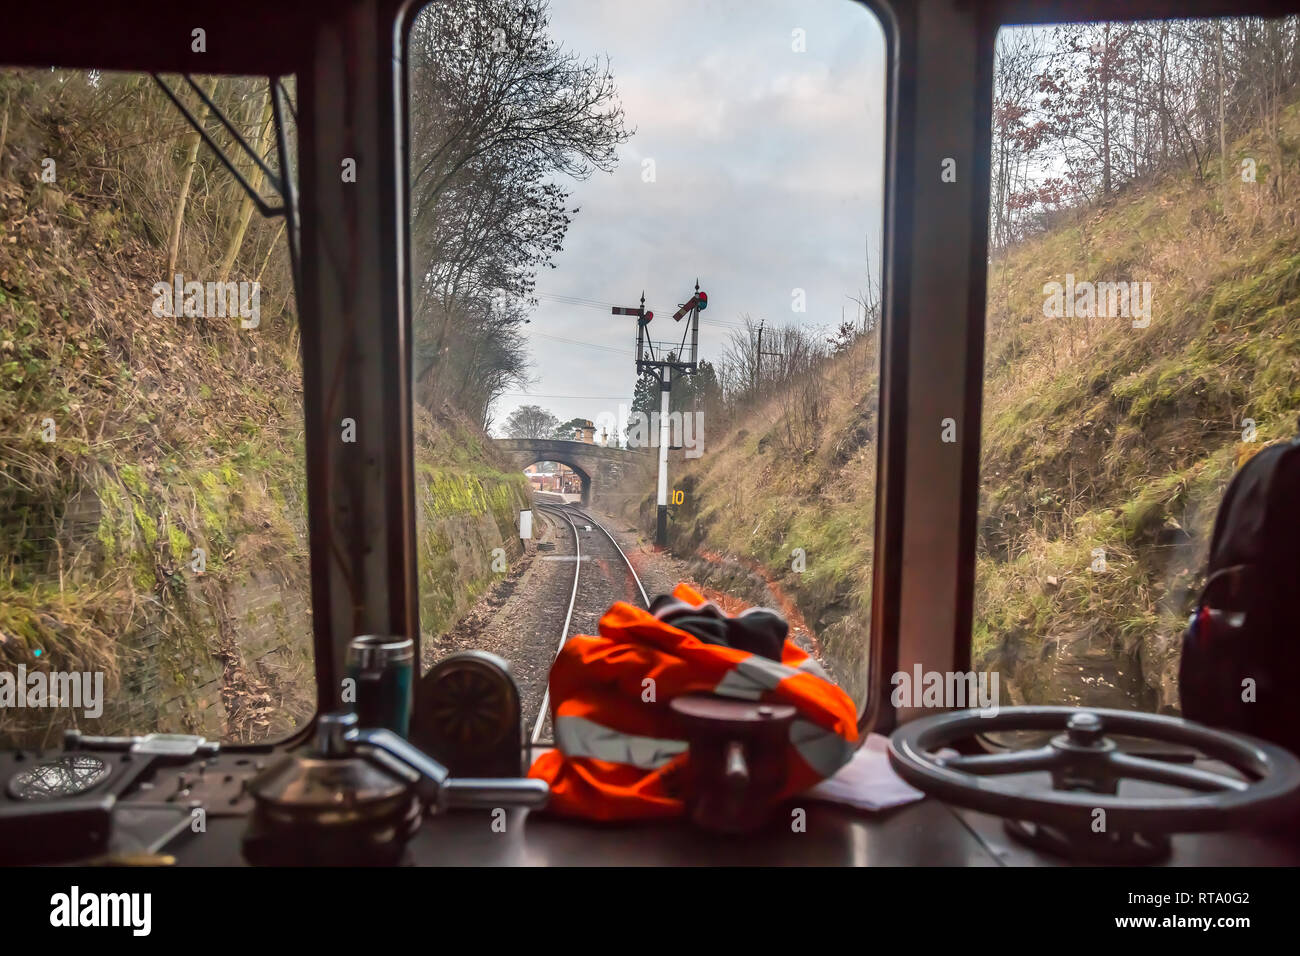 Vista della pista e dei segnali dal cockpit del conducente del treno diesel attraverso la finestra del treno mobile sulla Severn Valley Railway, in avvicinamento alla stazione ferroviaria vintage di Arley. Foto Stock